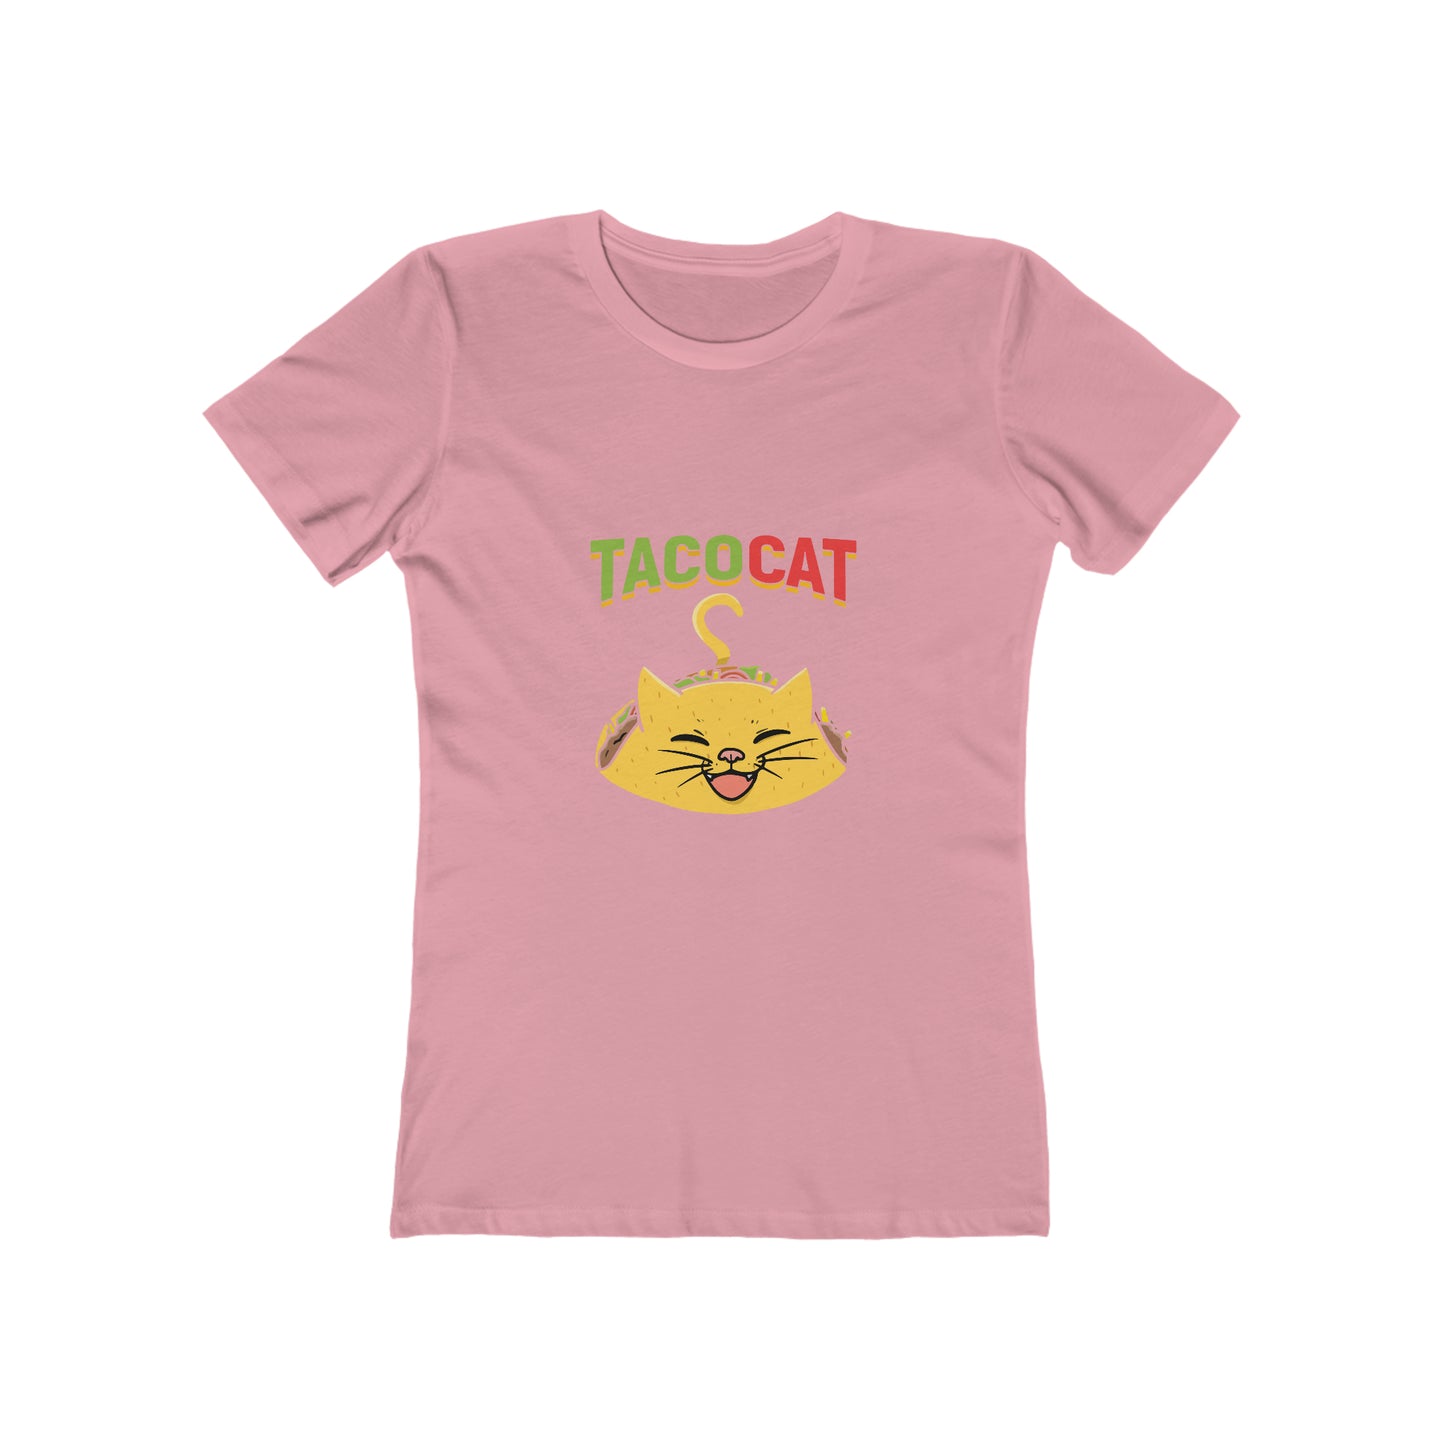 Tacocat - Women's T-shirt